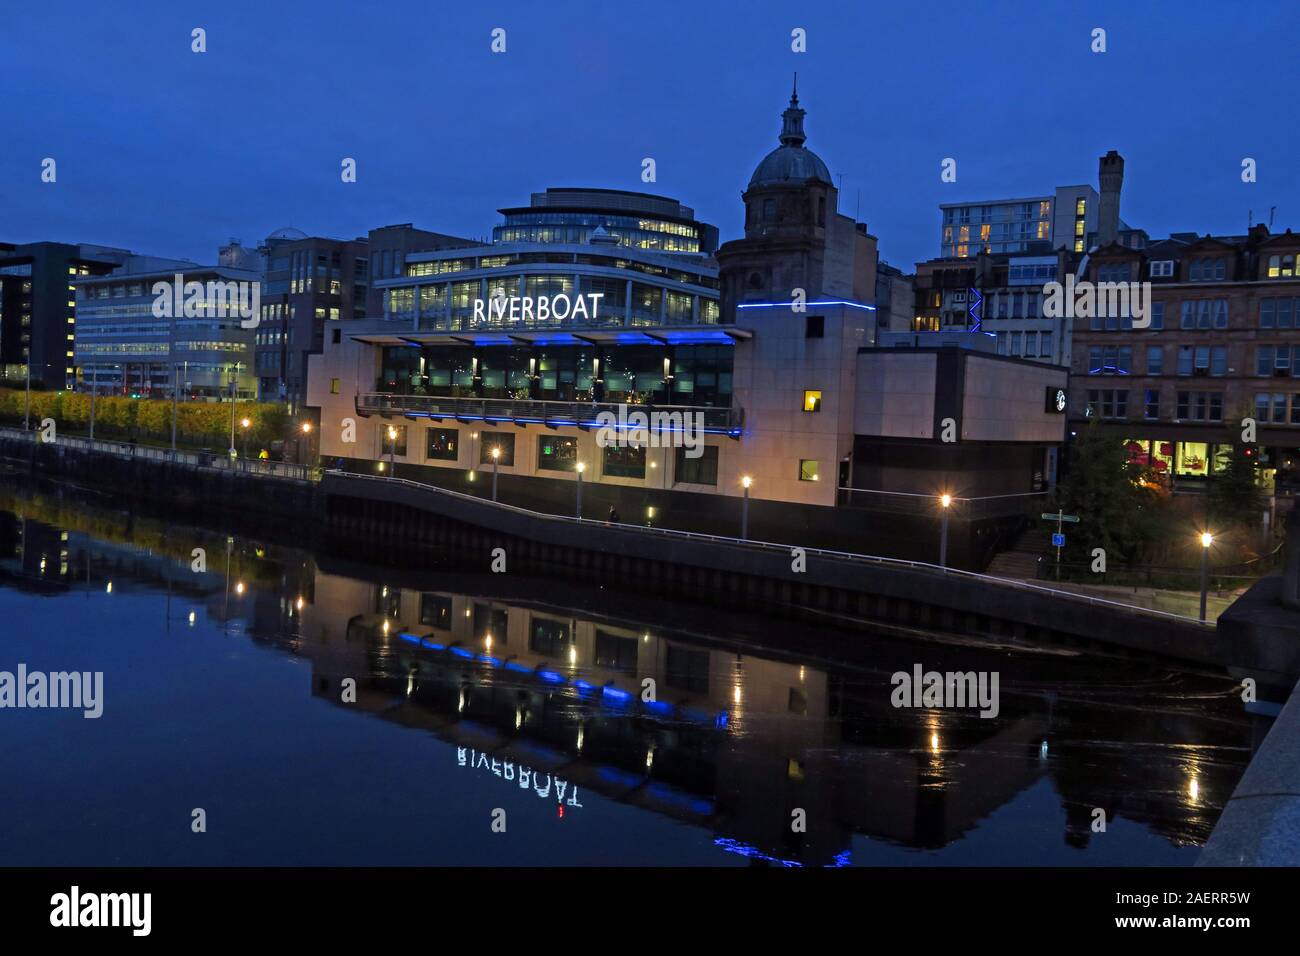 Grosvenor Casino panorama, Glasgow Riverboat, Clyde River, 61 Broomielaw, Glasgow, Écosse, Royaume-Uni, G1 4RJ, au crépuscule, le soir Banque D'Images